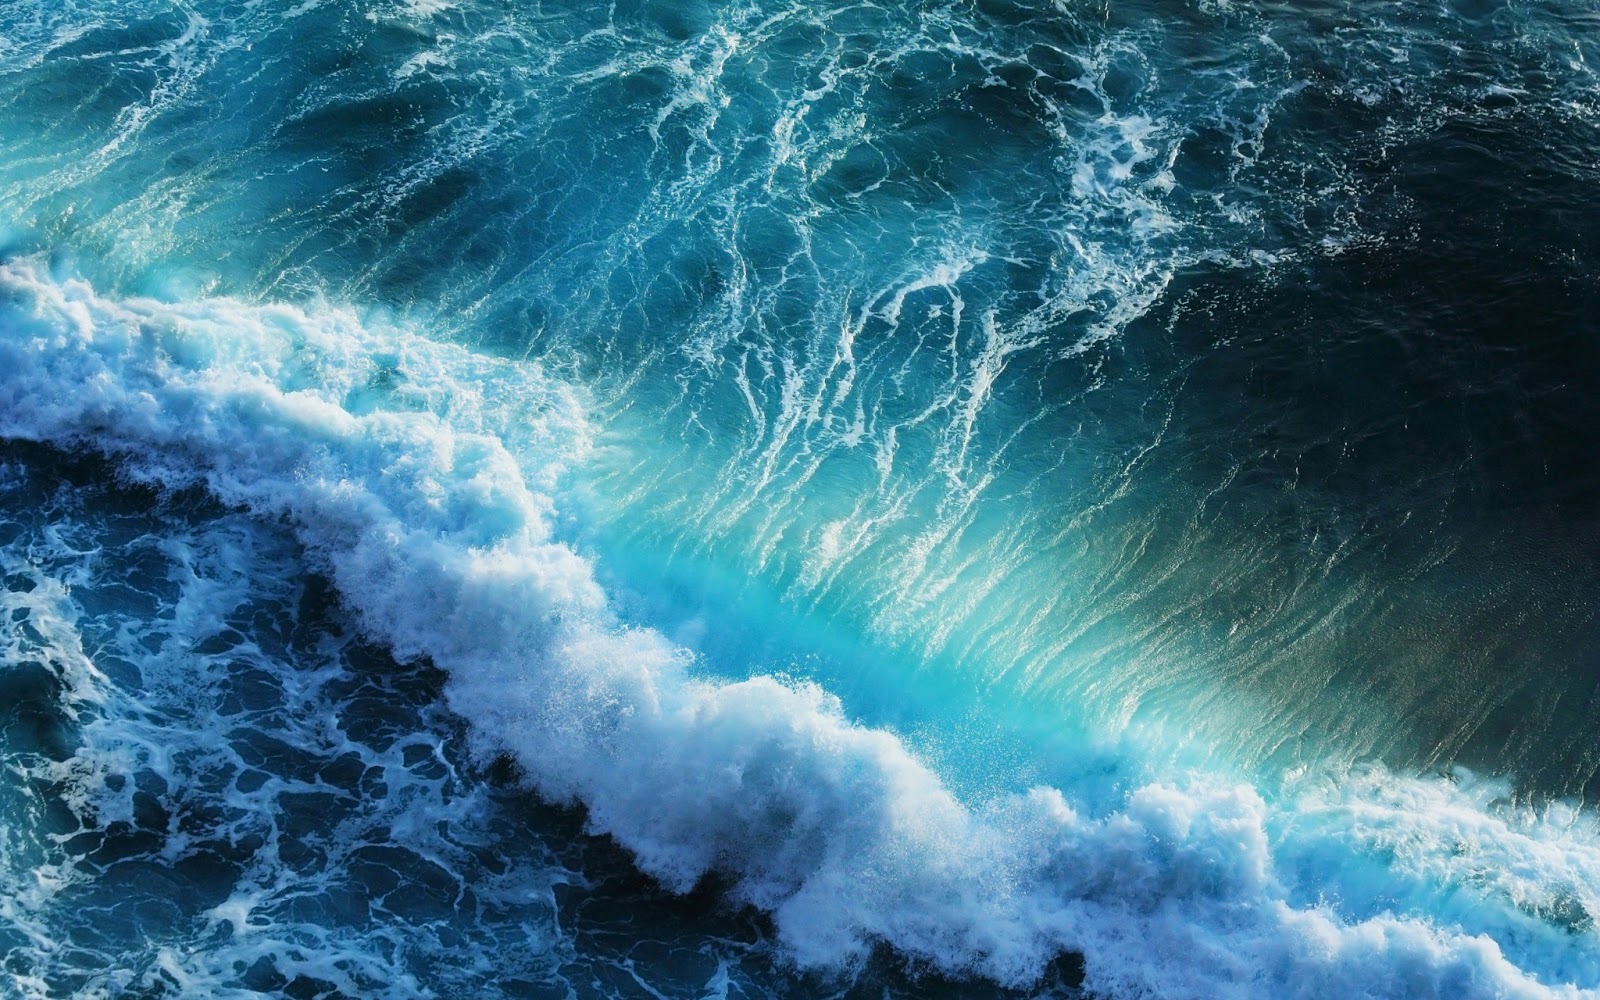  Download Ocean Wave Wallpapers